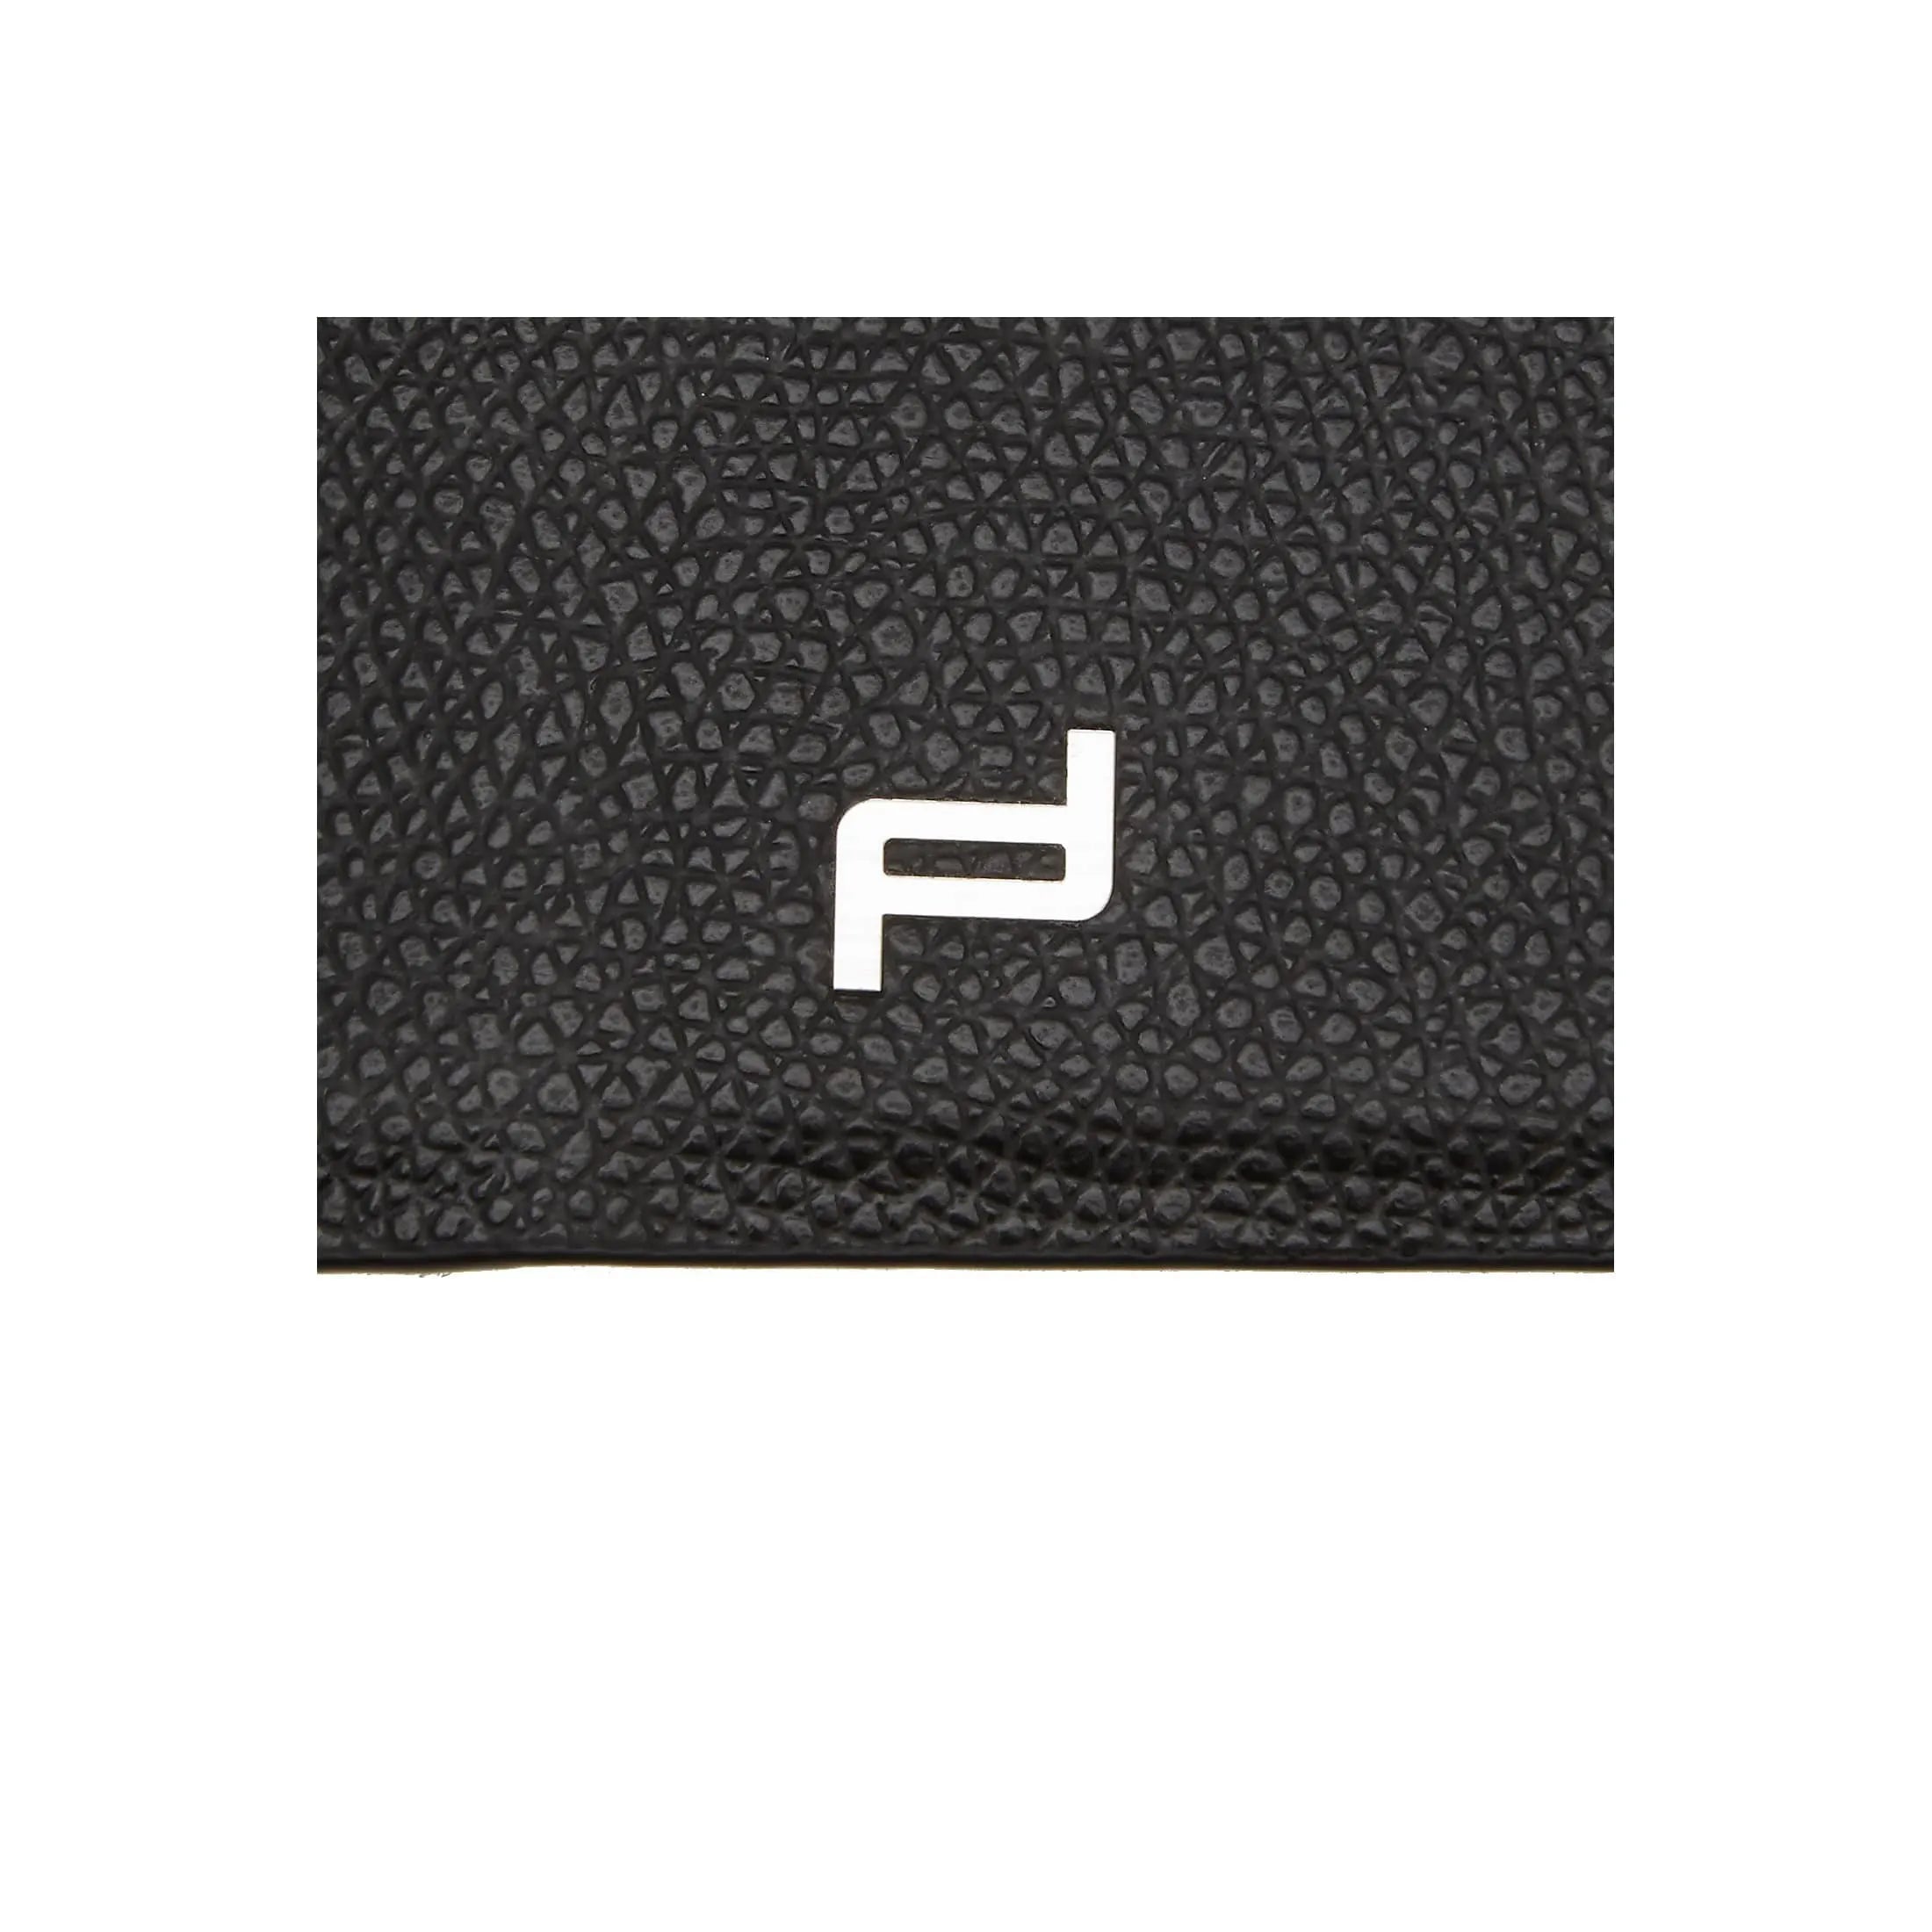 Porsche Design French Classic 3.0 iPad Mini 2 Case 2 20 cm - black